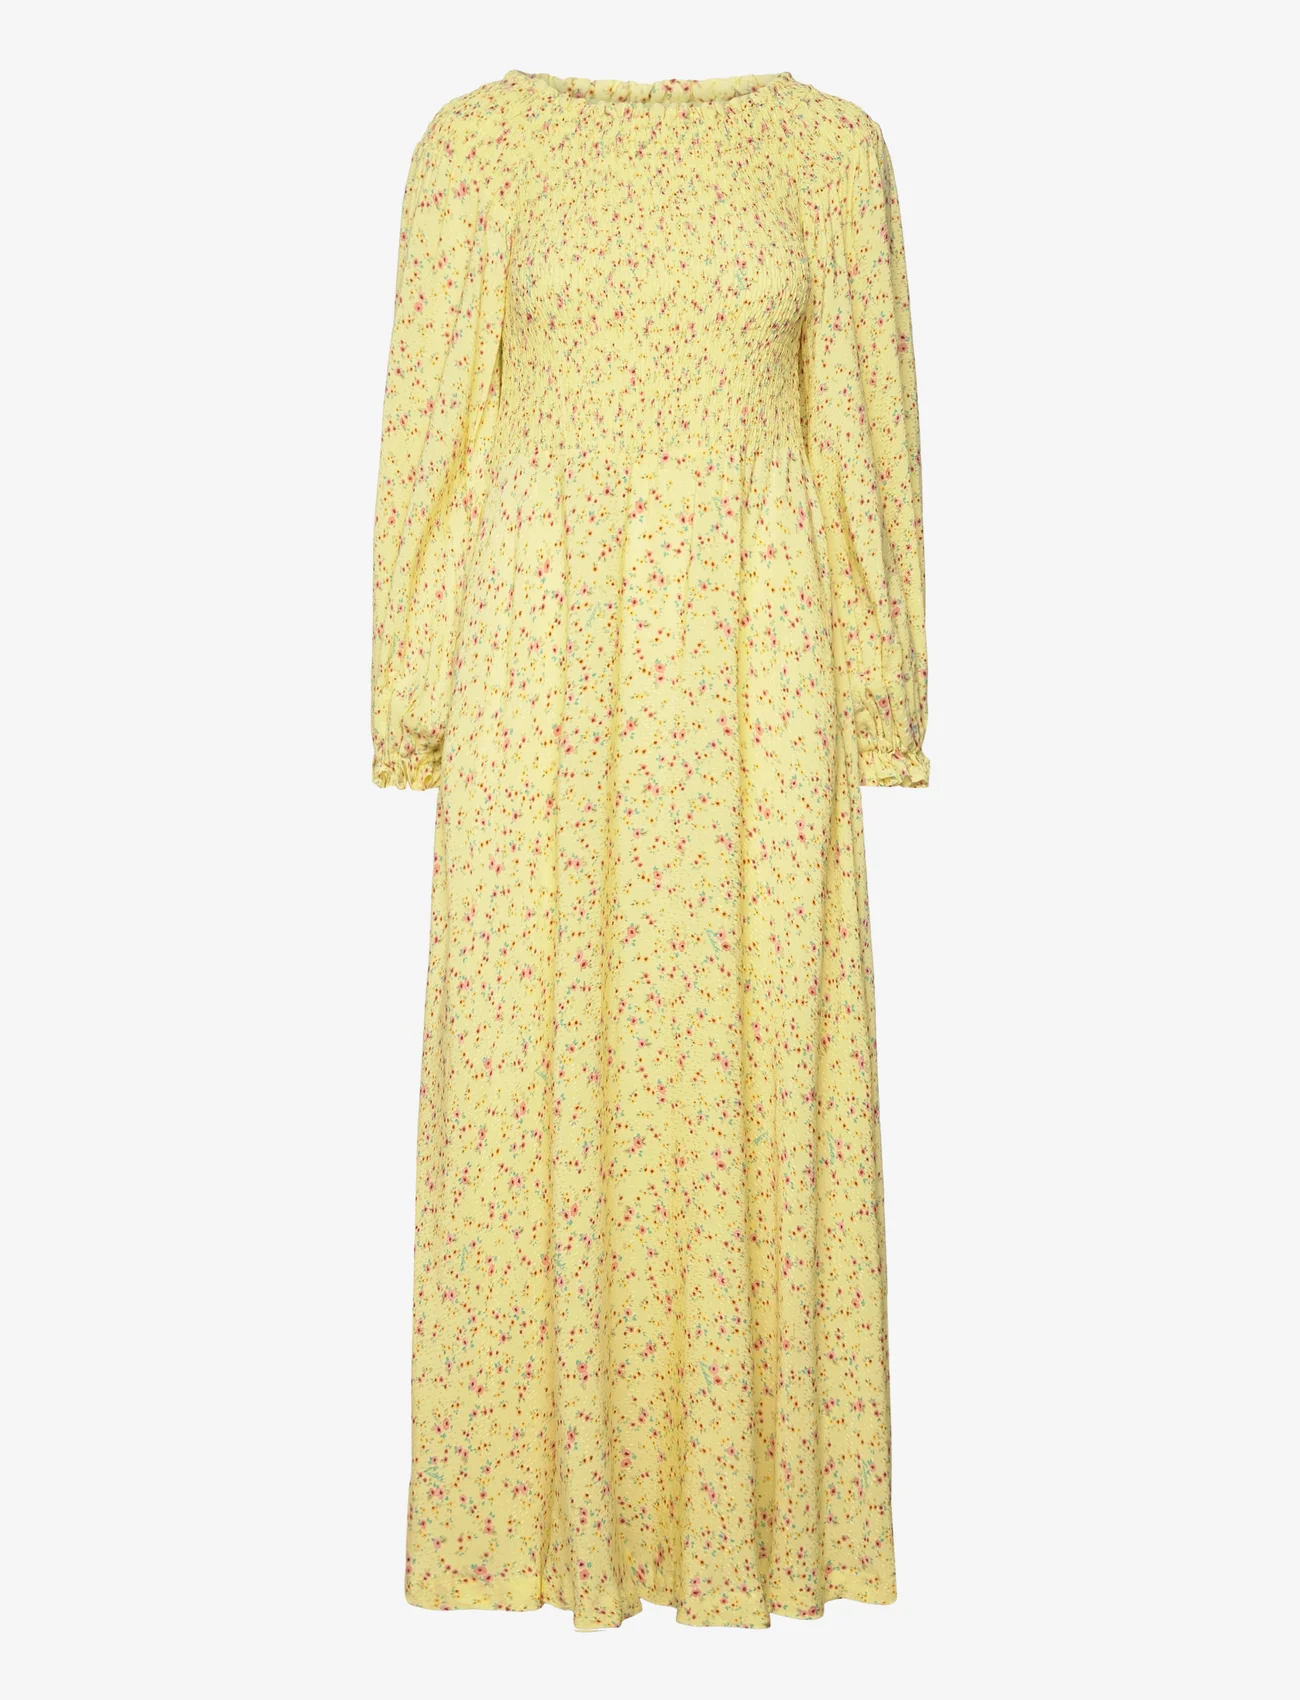 ROTATE Birger Christensen - Light Jacquard Maxi Dress - summer dresses - yellow pear comb. - 0